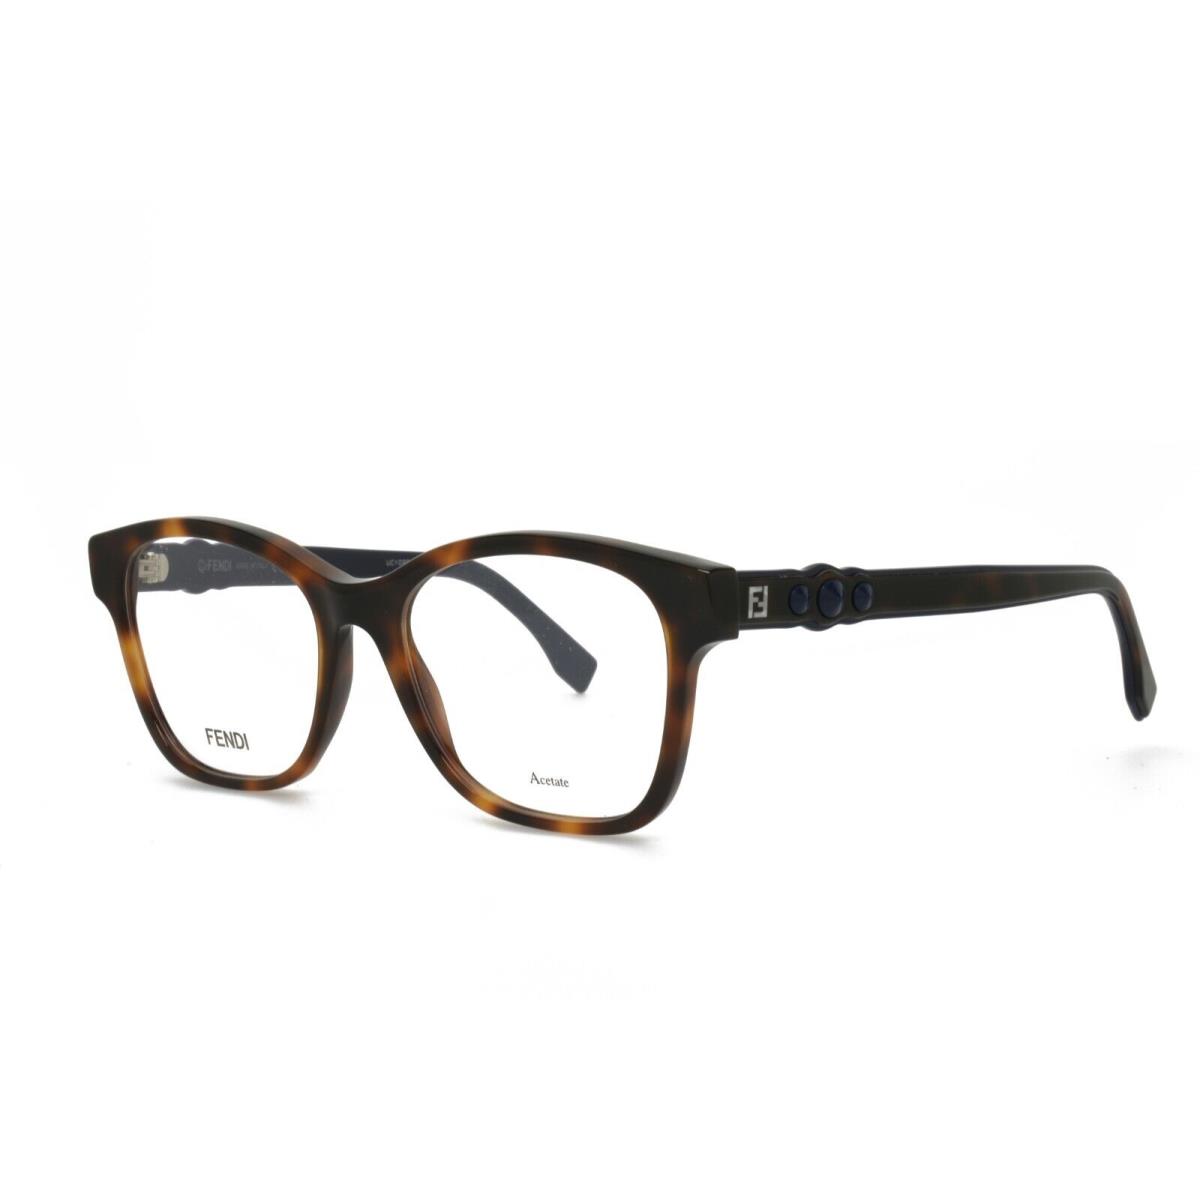 Fendi 0276 086 51-17-145 Tortoise Eyeglasses Frames